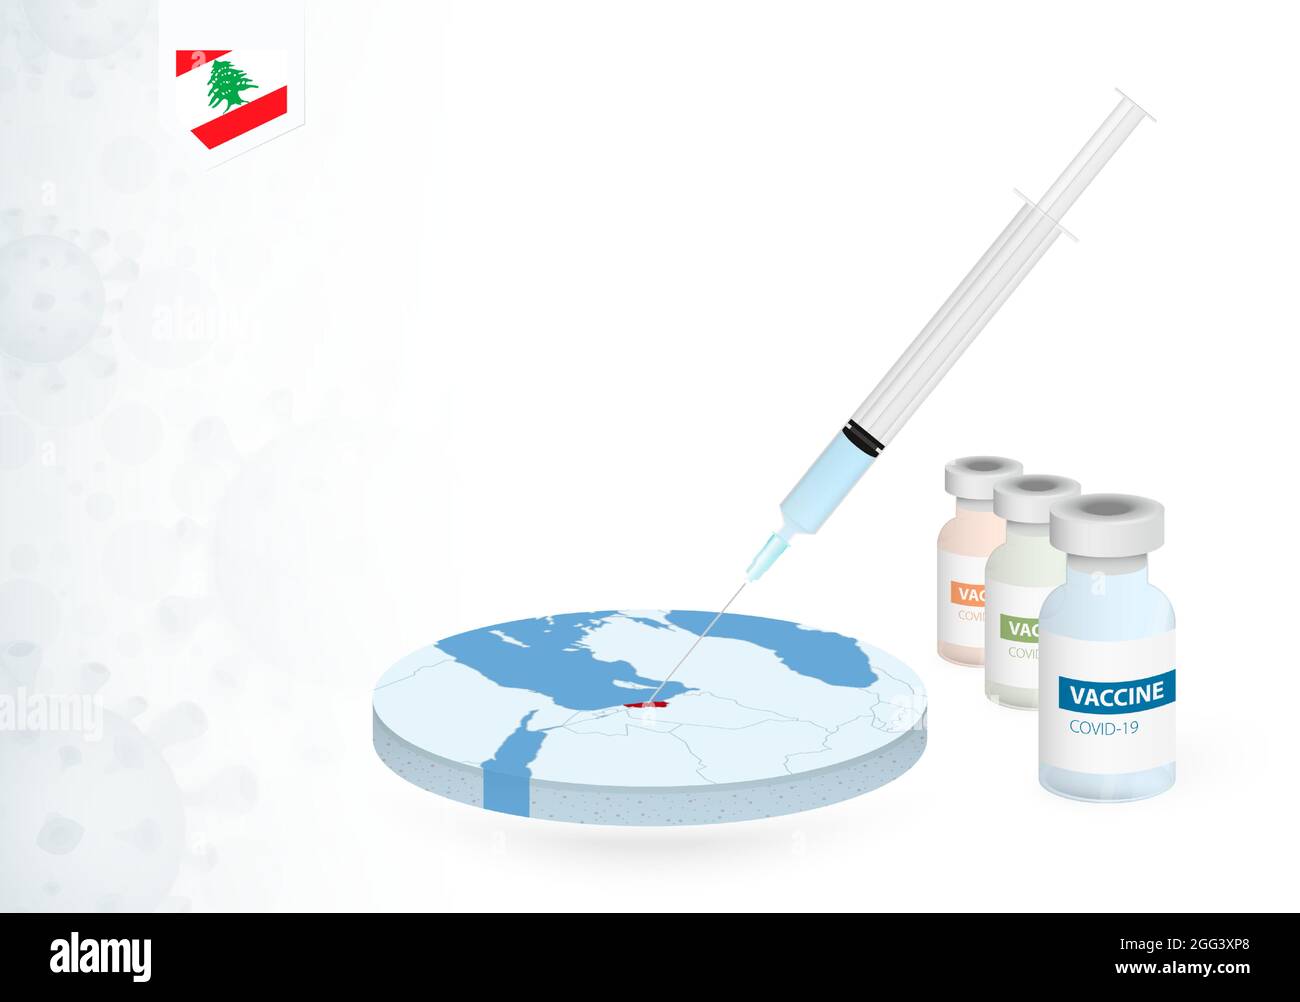 Vaccination au Liban avec différents types de vaccin COVID-19. Сoncept avec l'injection de vaccin dans la carte du Liban. Illustration vectorielle. Illustration de Vecteur